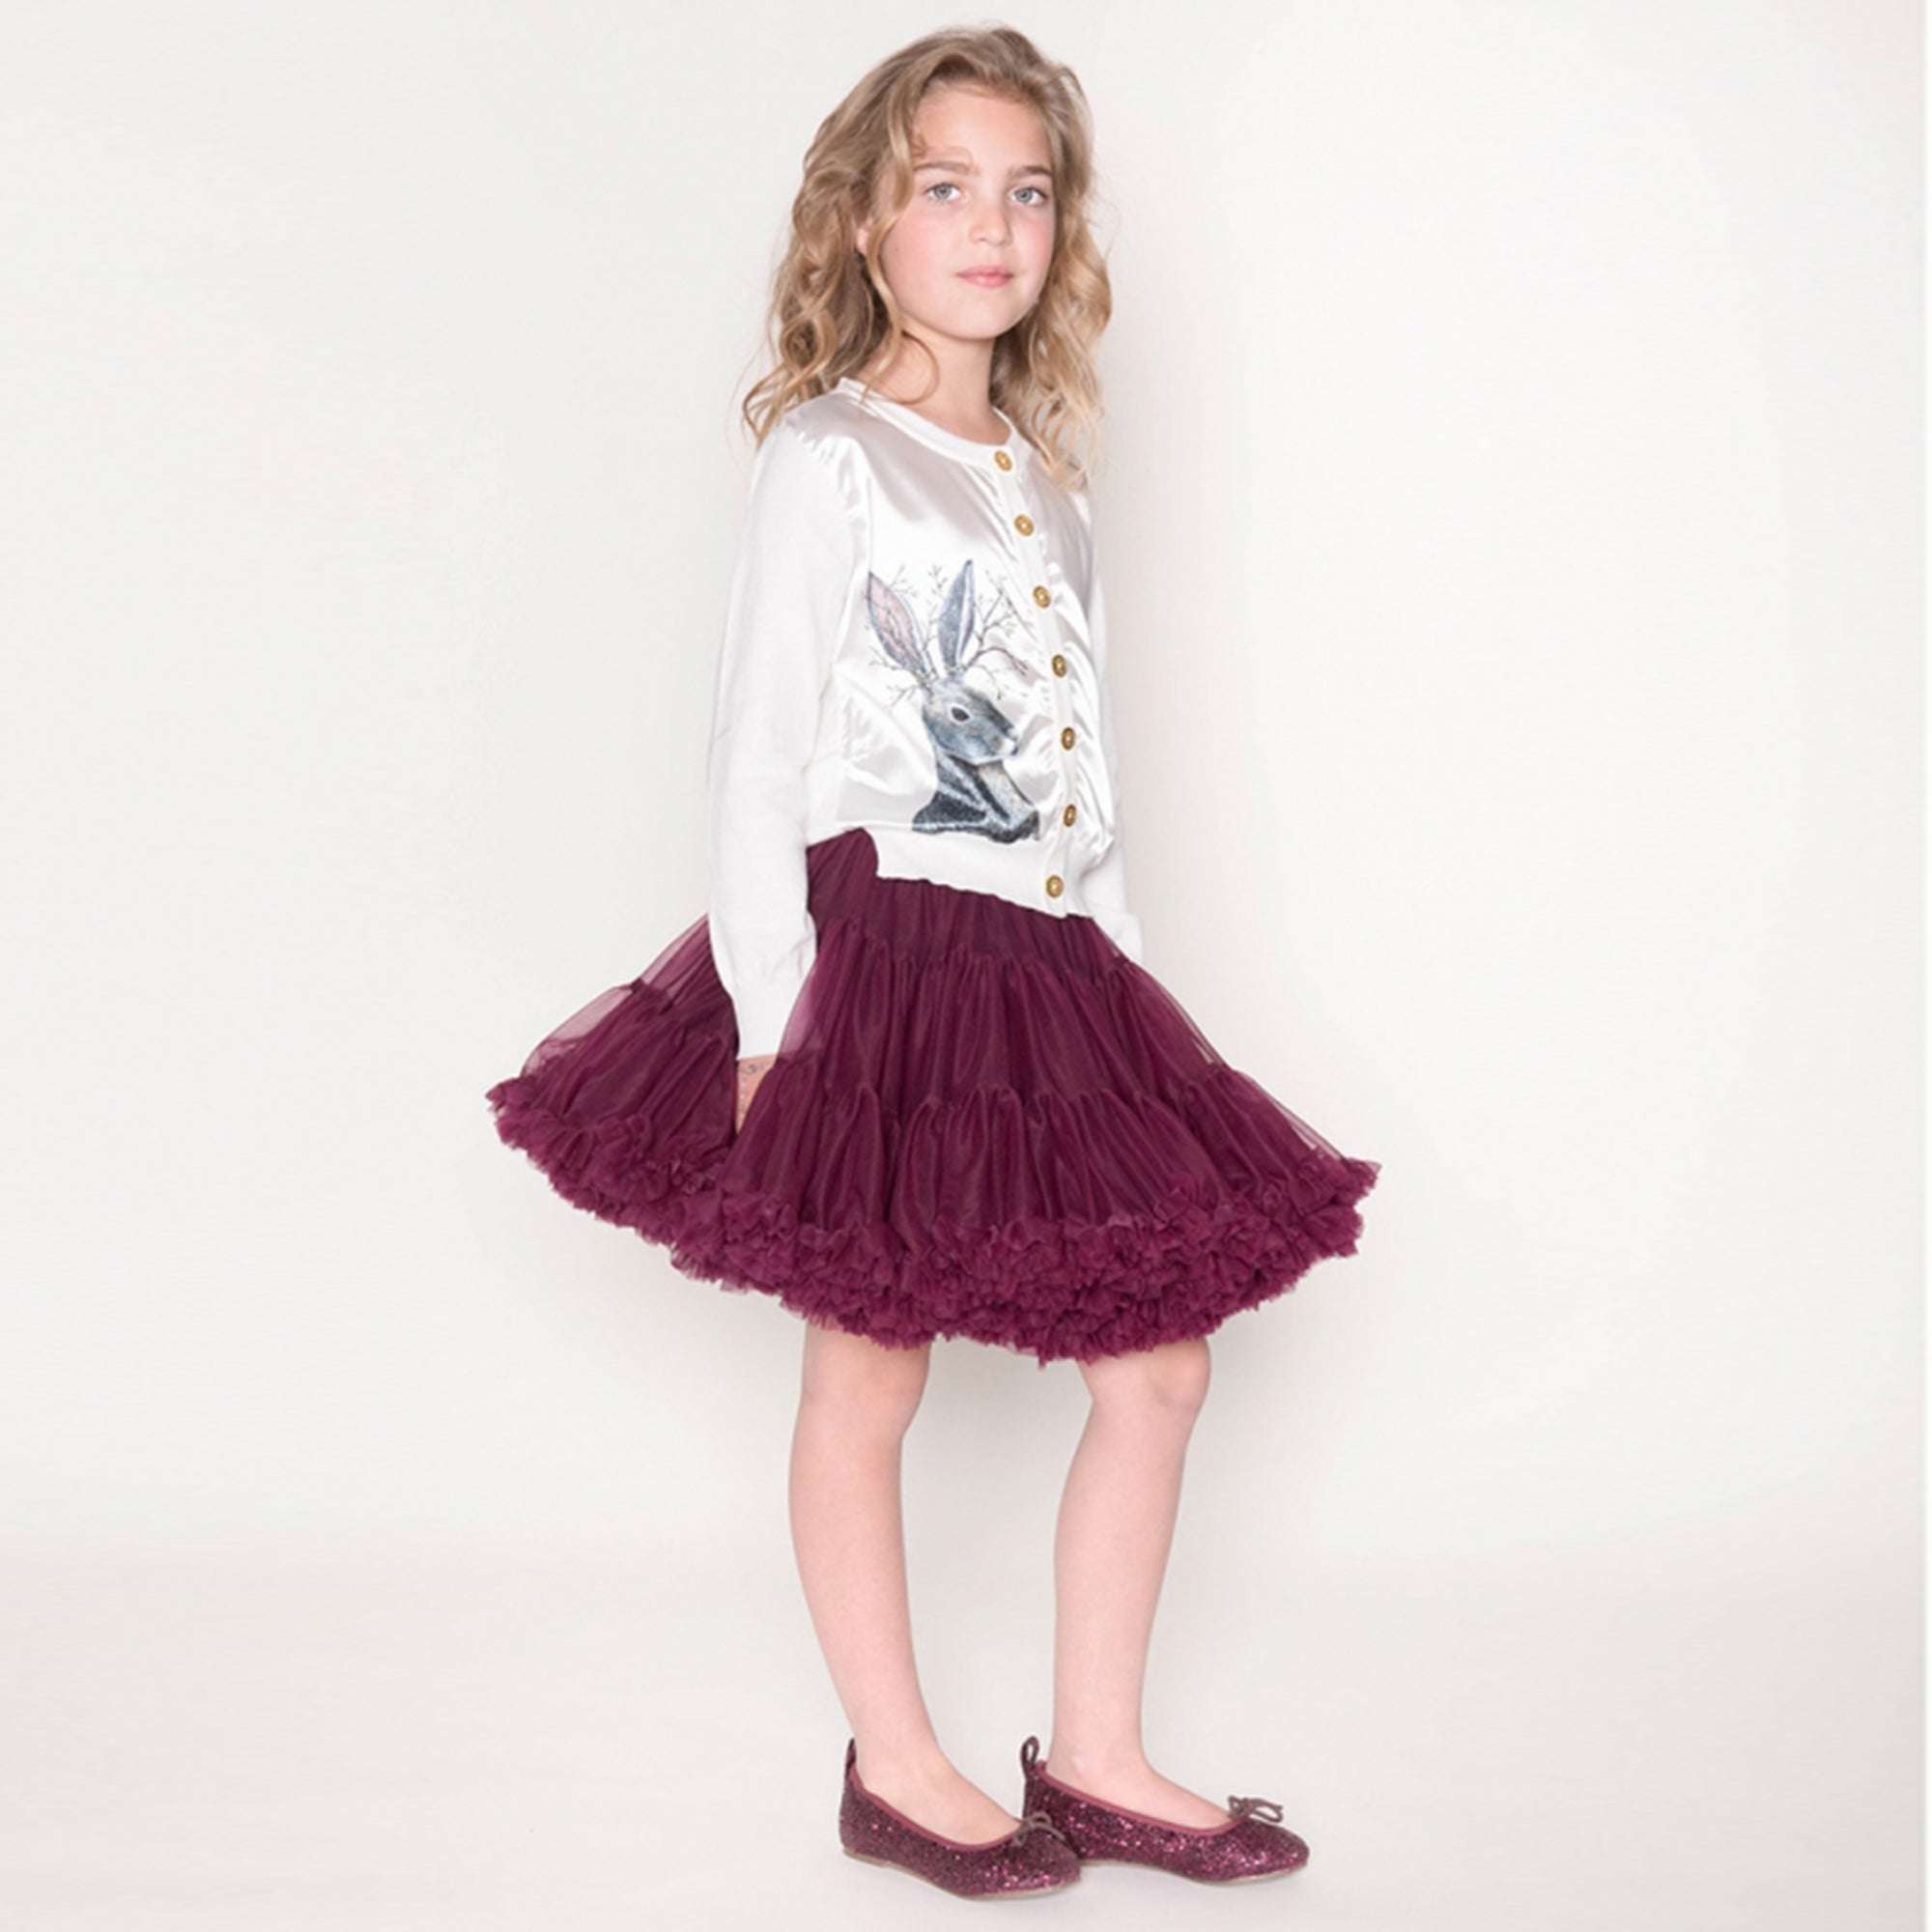 Girls Burgundy Nylon Knitted Skirt